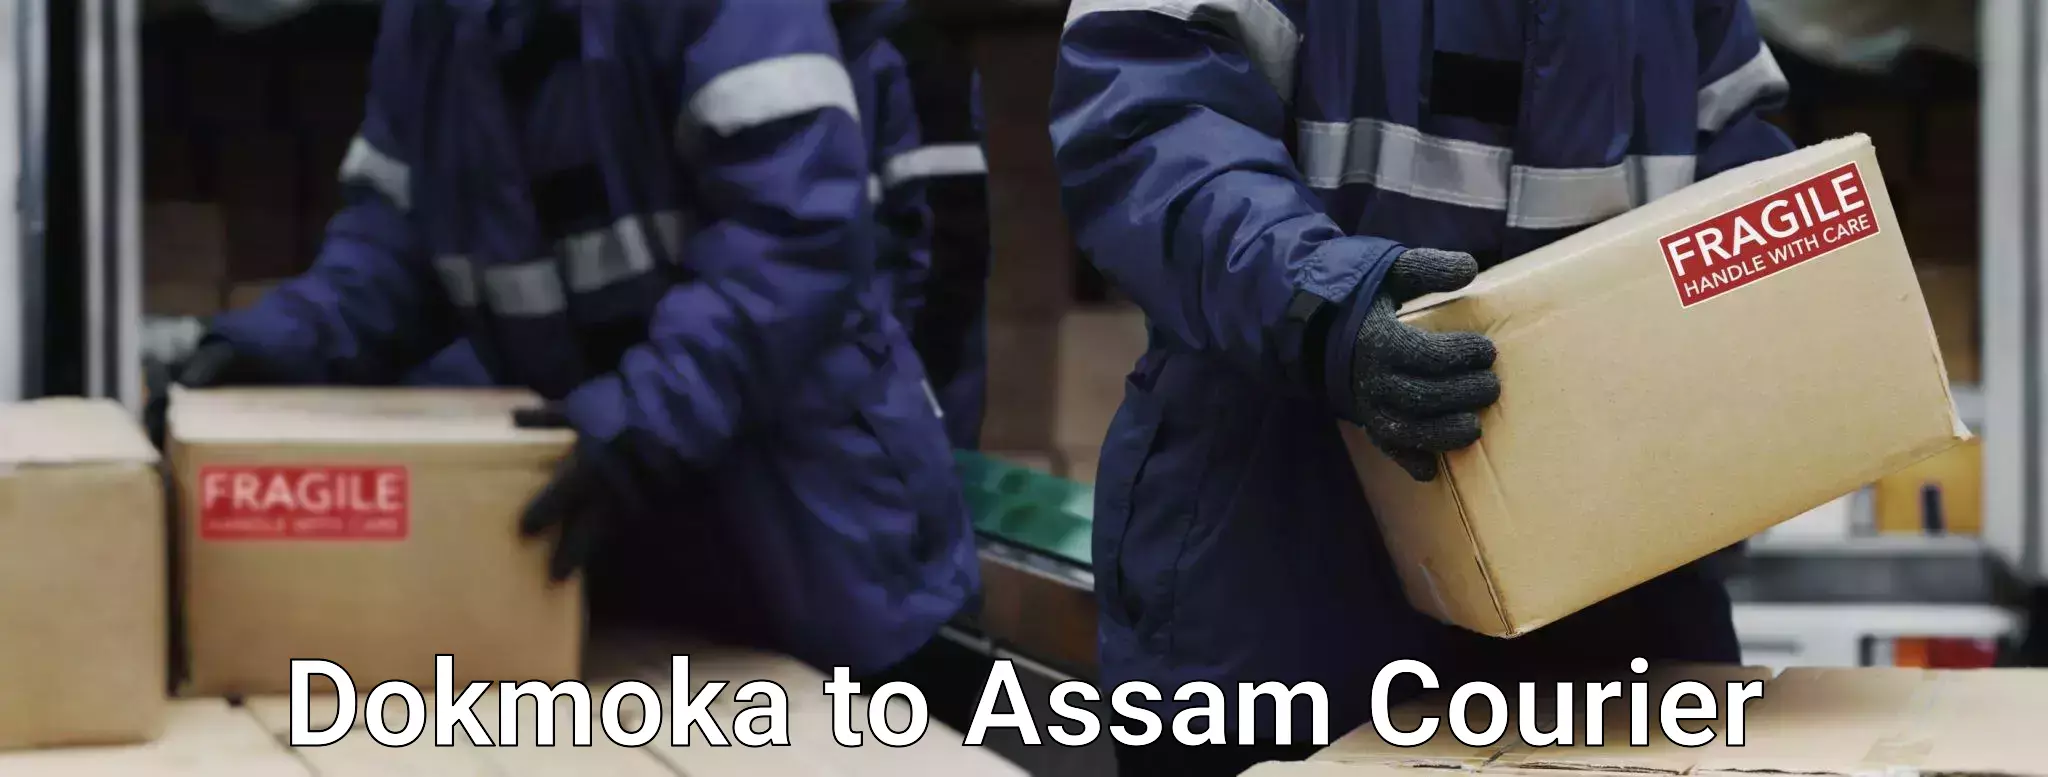 Luggage shipment tracking Dokmoka to Assam